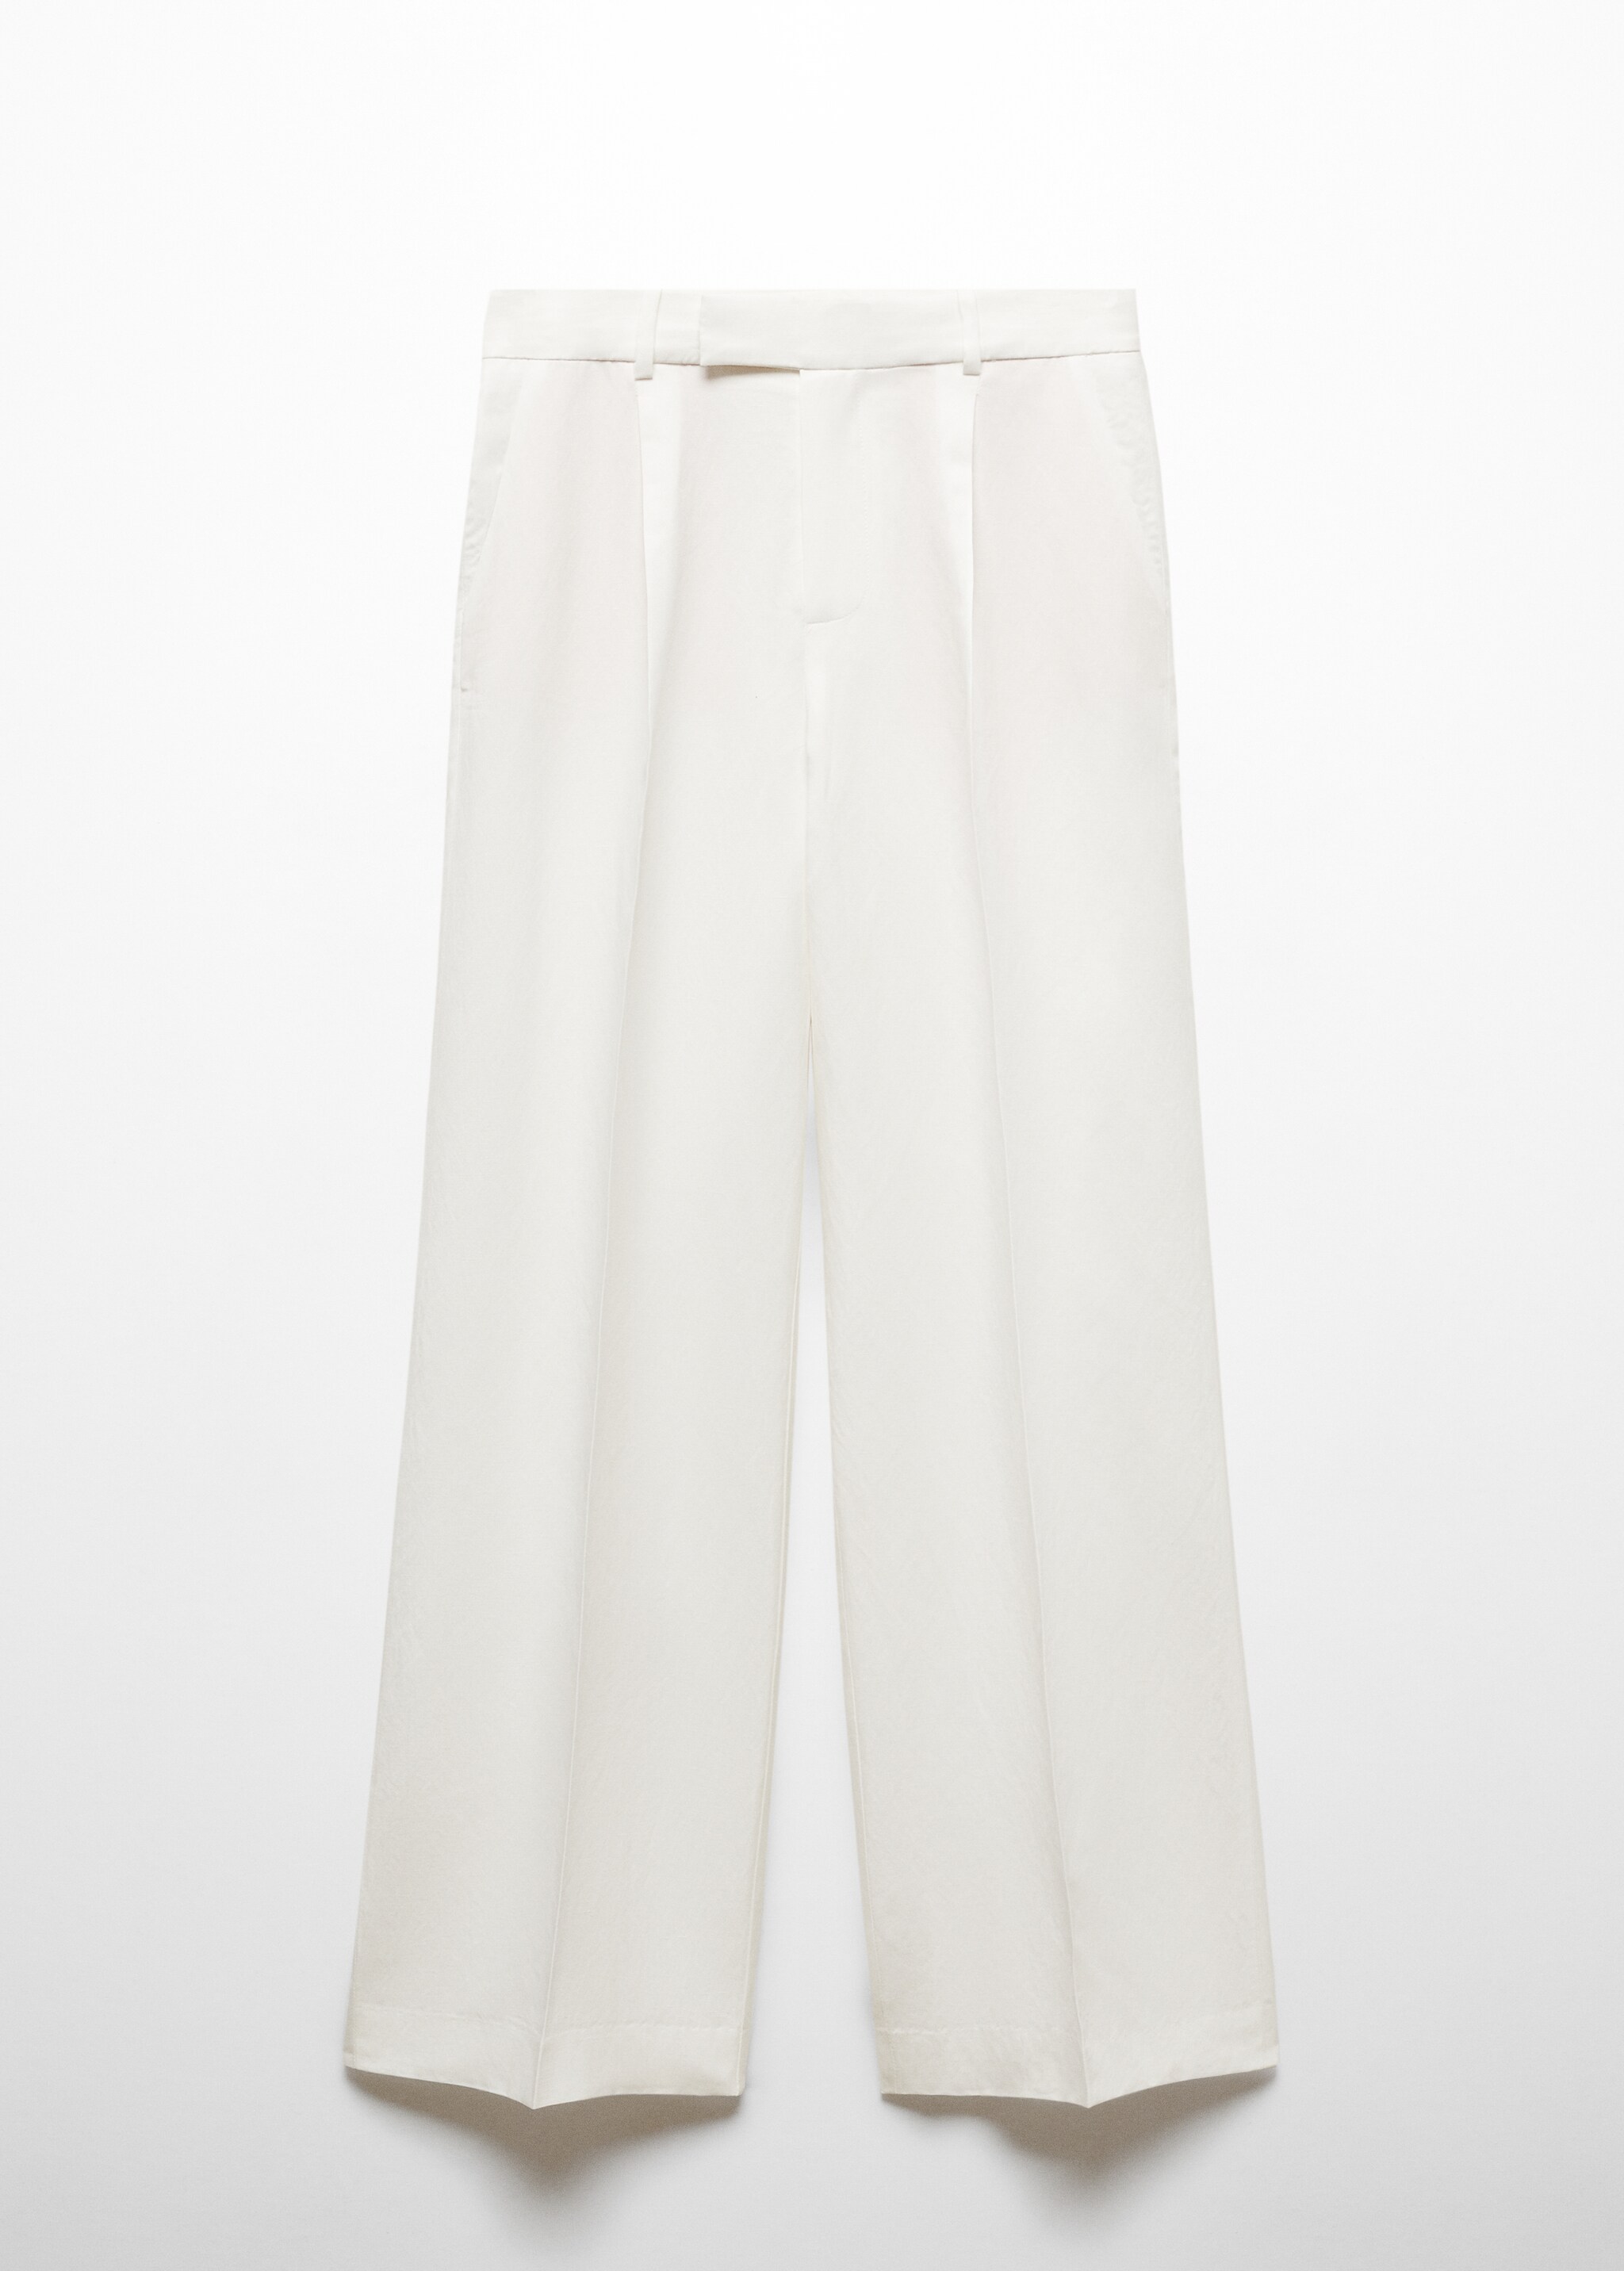 Pilili kumaş pantolonu - Modelsiz ürün